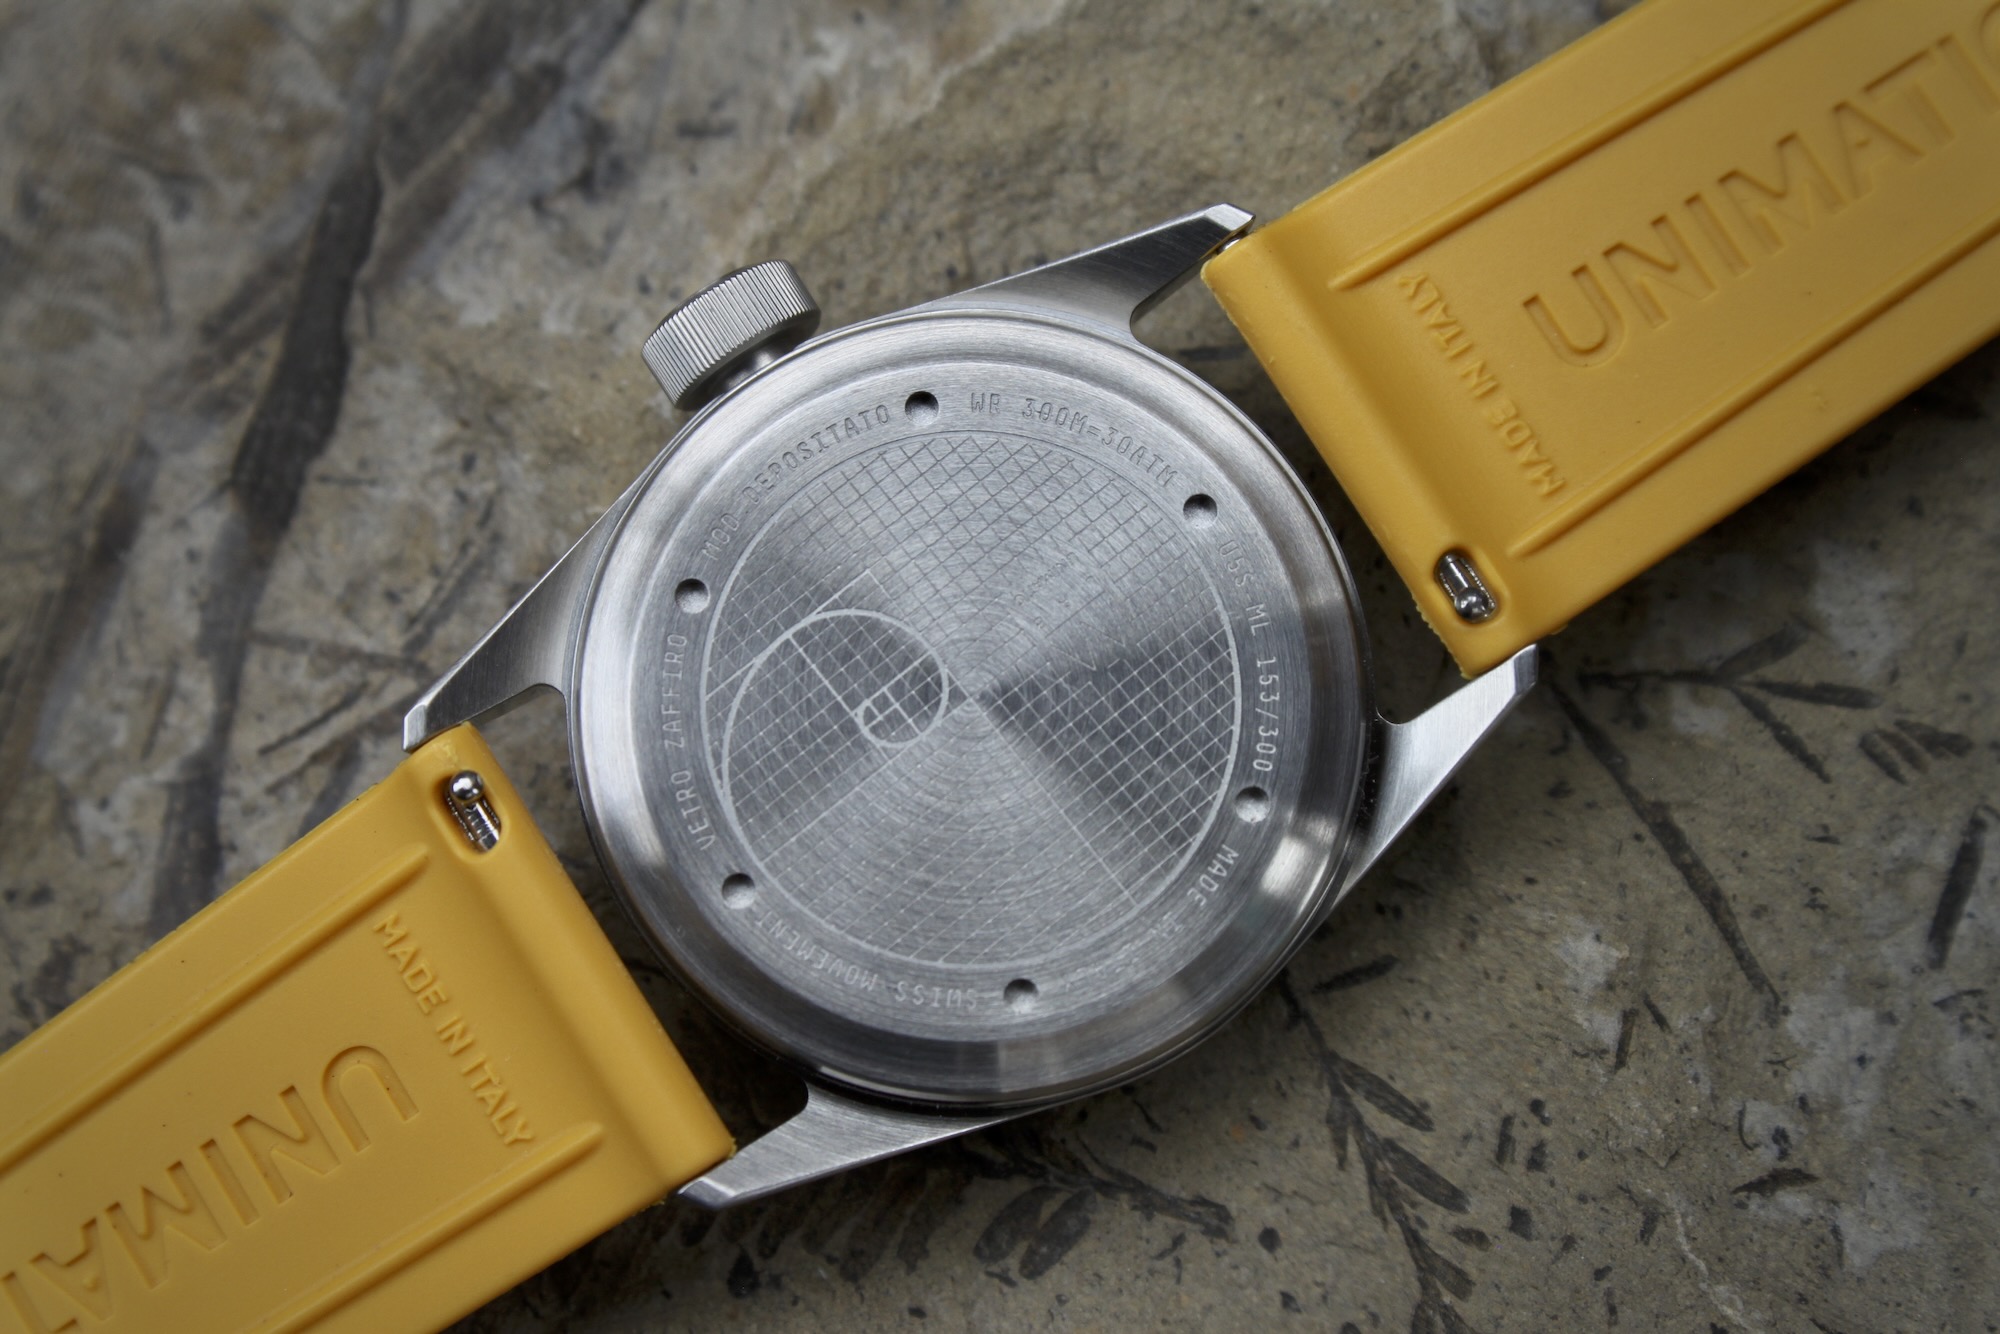 Обзор часов: Часы Unimatic U5S-ML Massena LAB Collaboration Watch